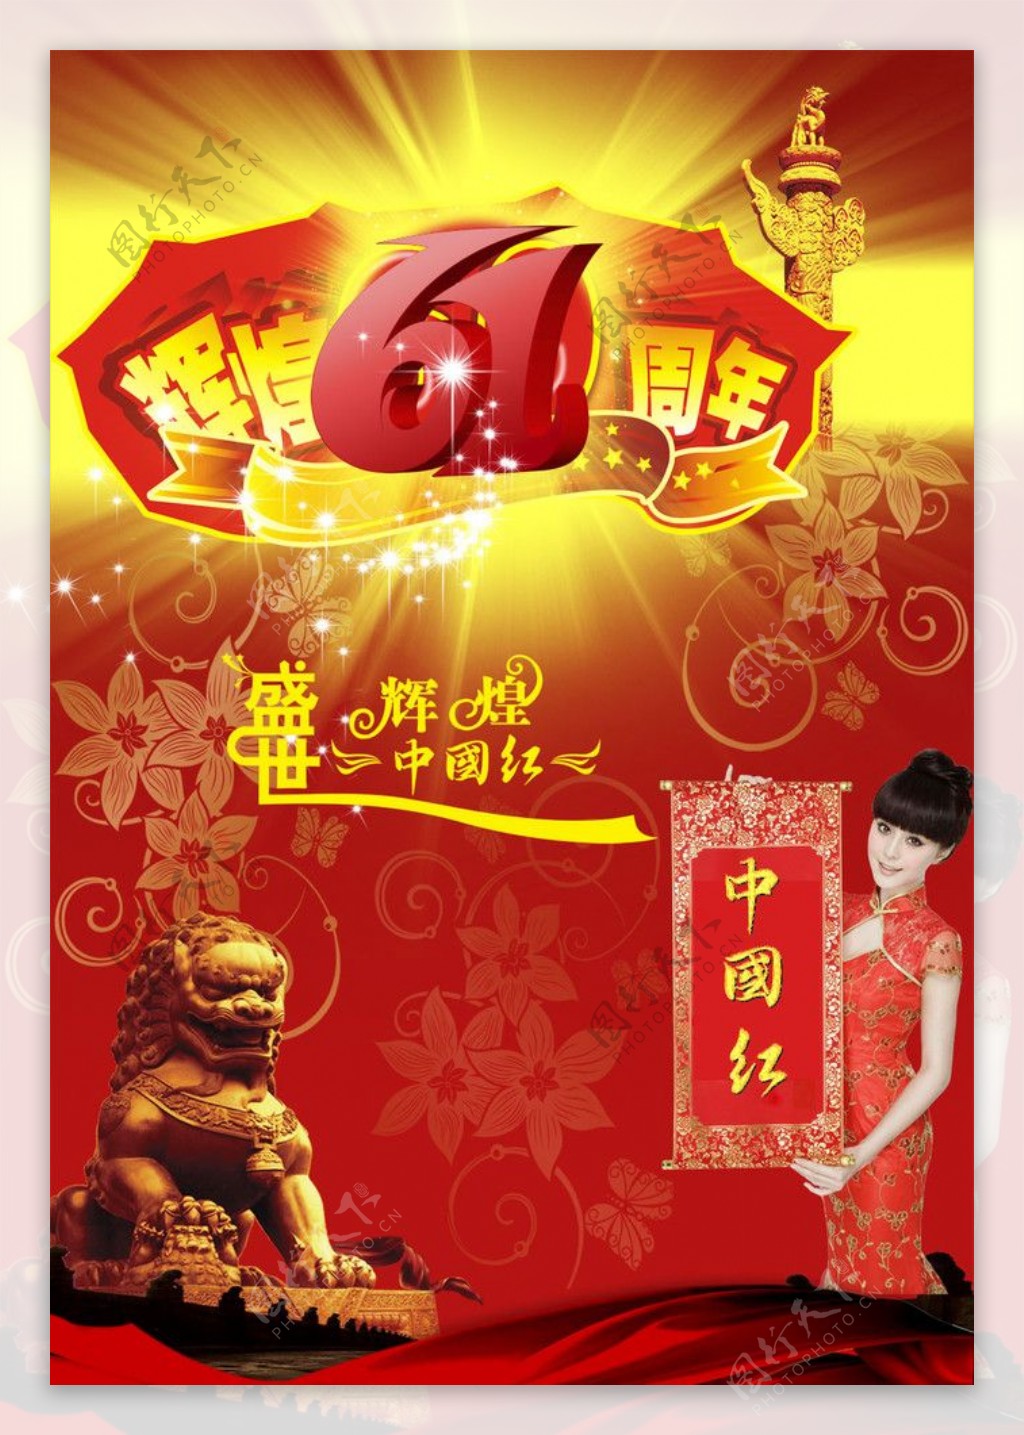 盛世辉煌中国红辉煌61周年庆典图片